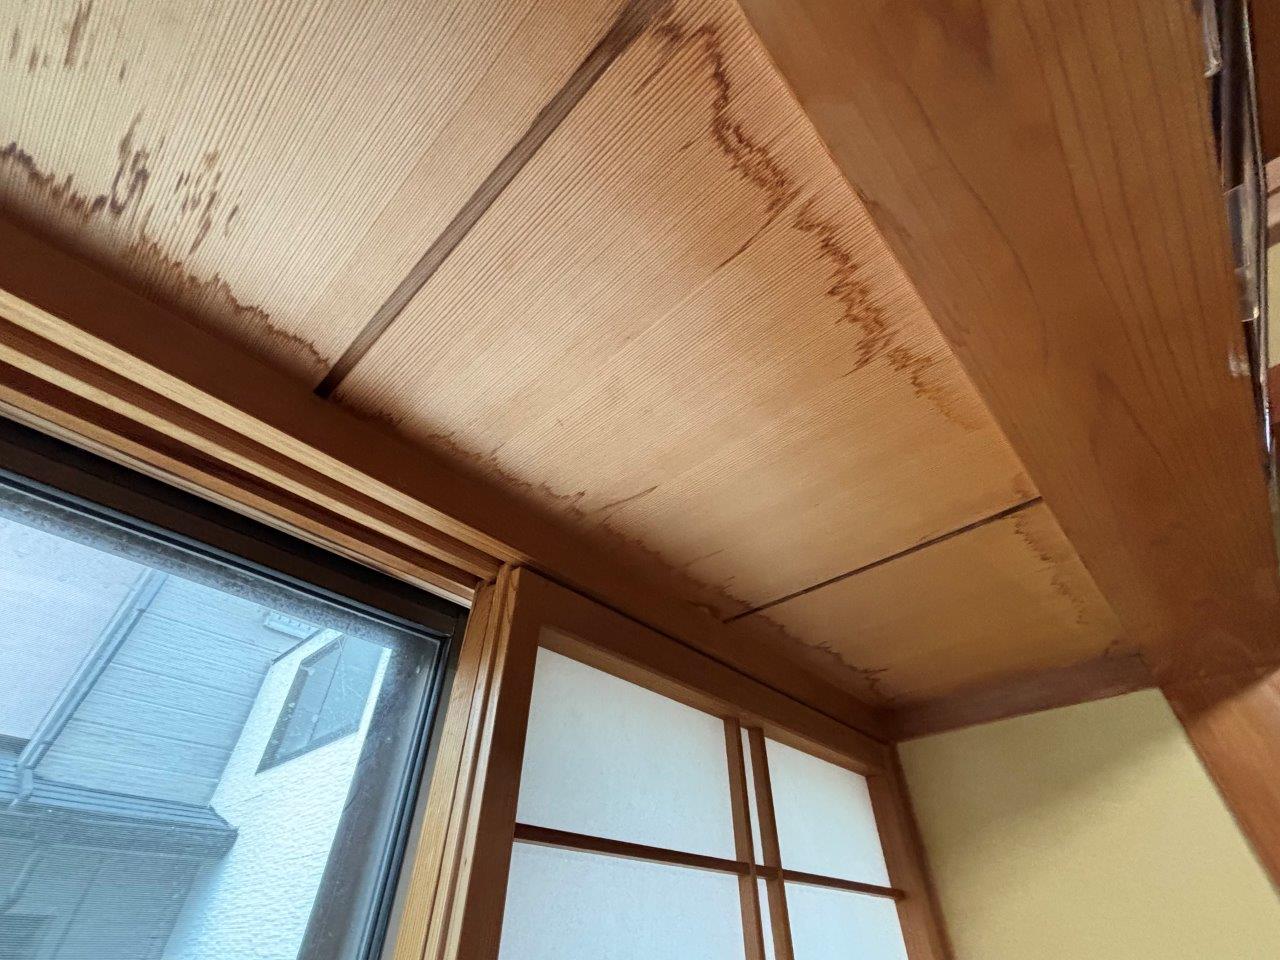 新潟市秋葉区にて築30年の出窓から雨漏れしたため修繕したいとご相談を頂きました